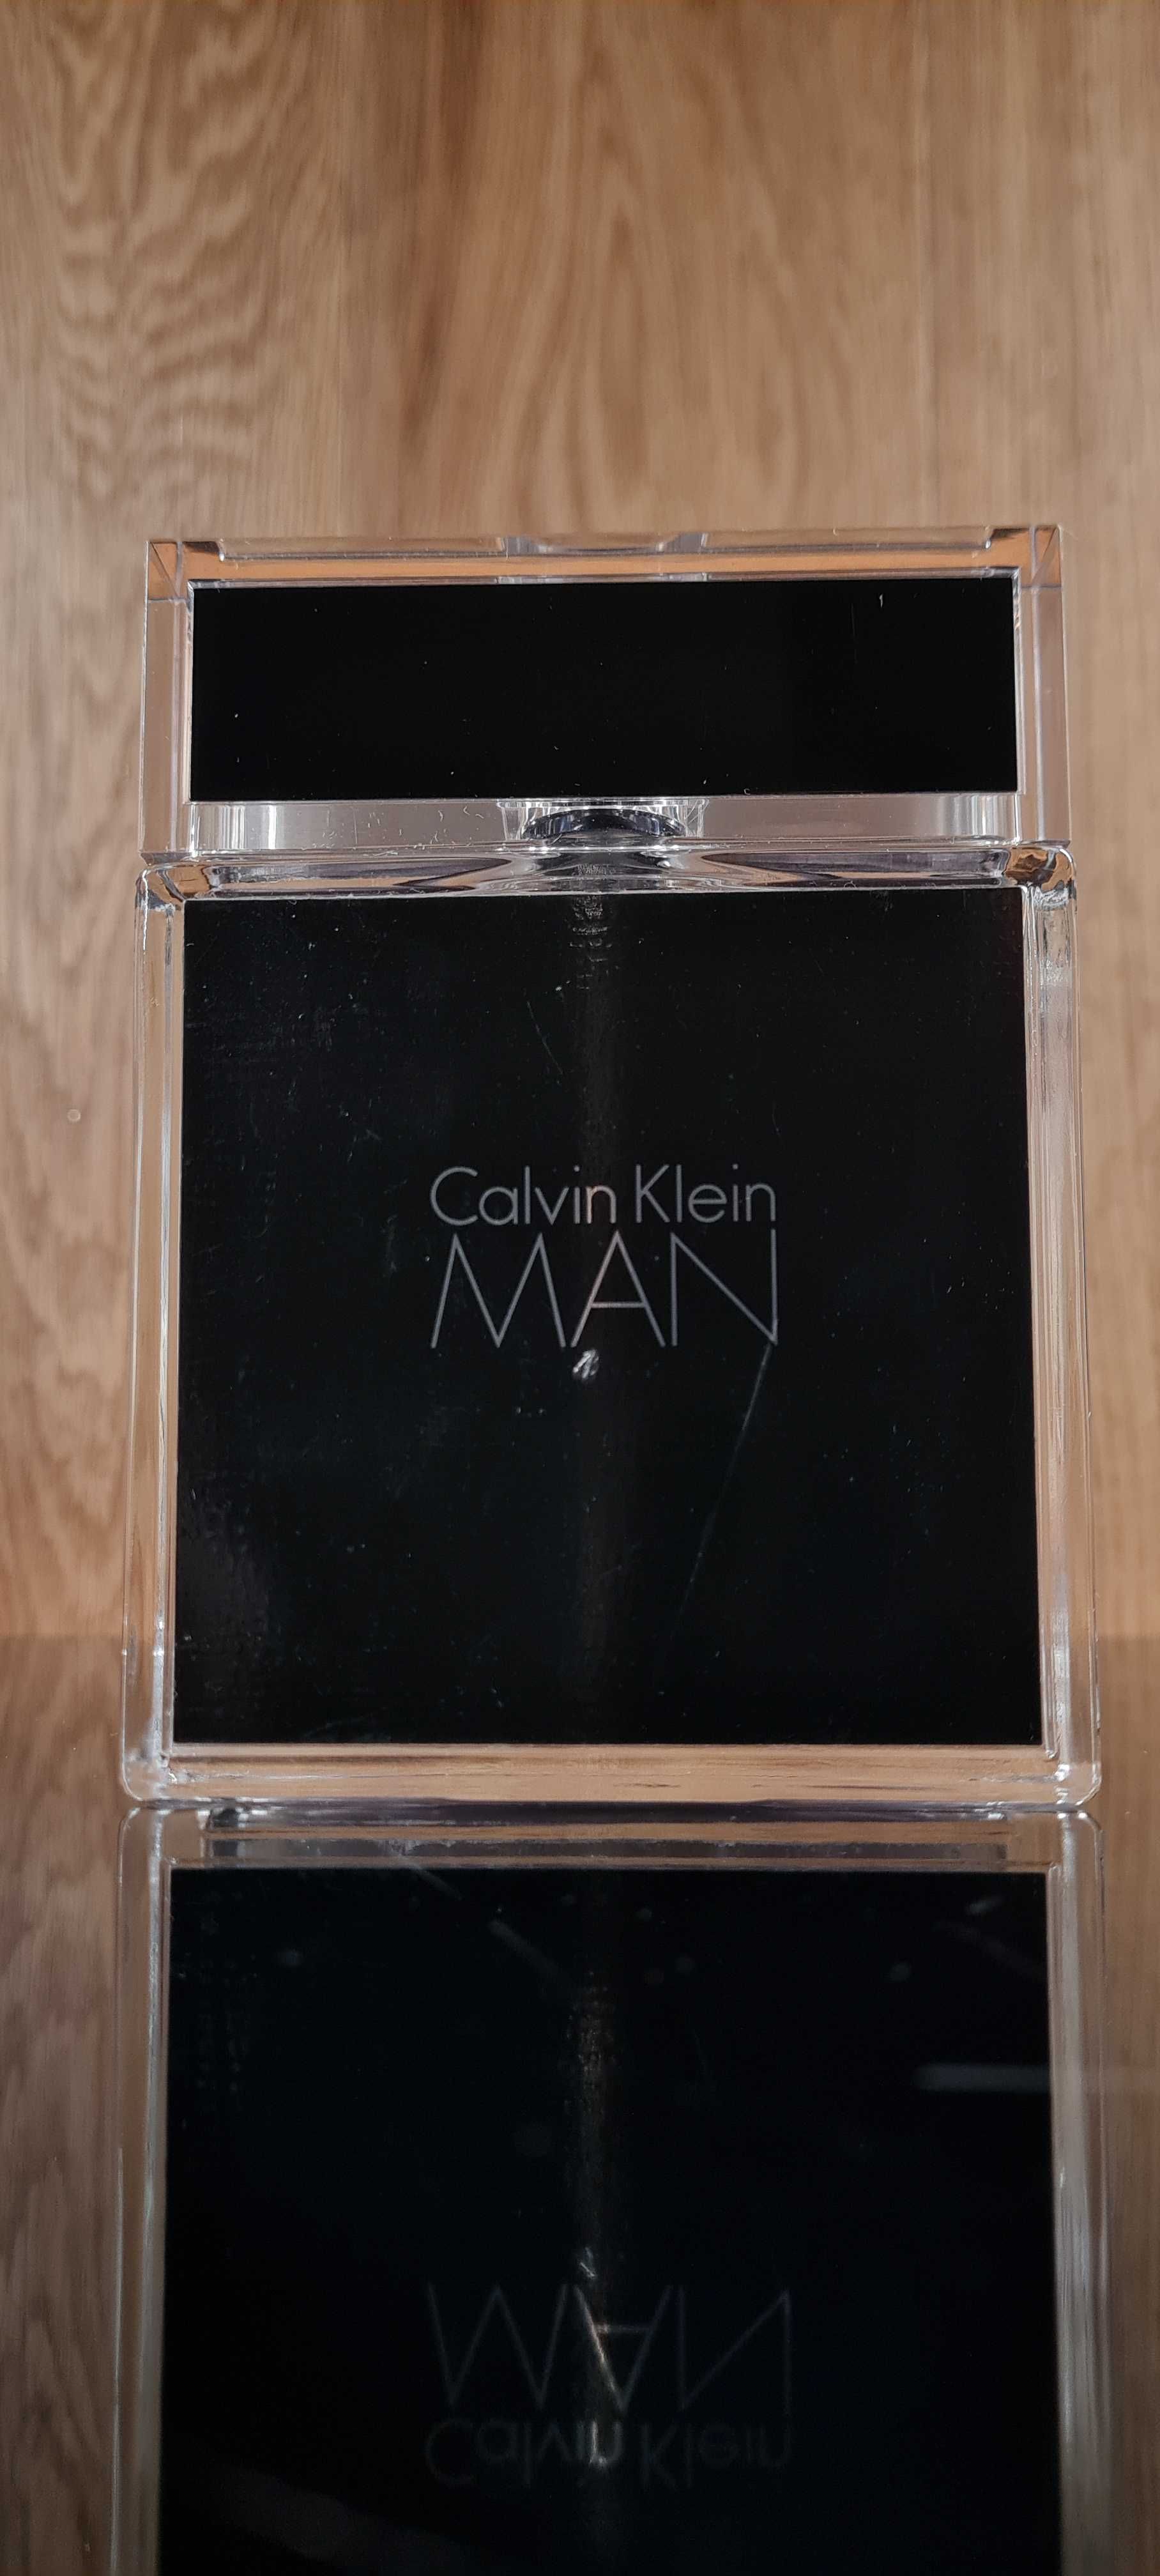 Calvin Klein Man - Woda Toaletowa 100 ml